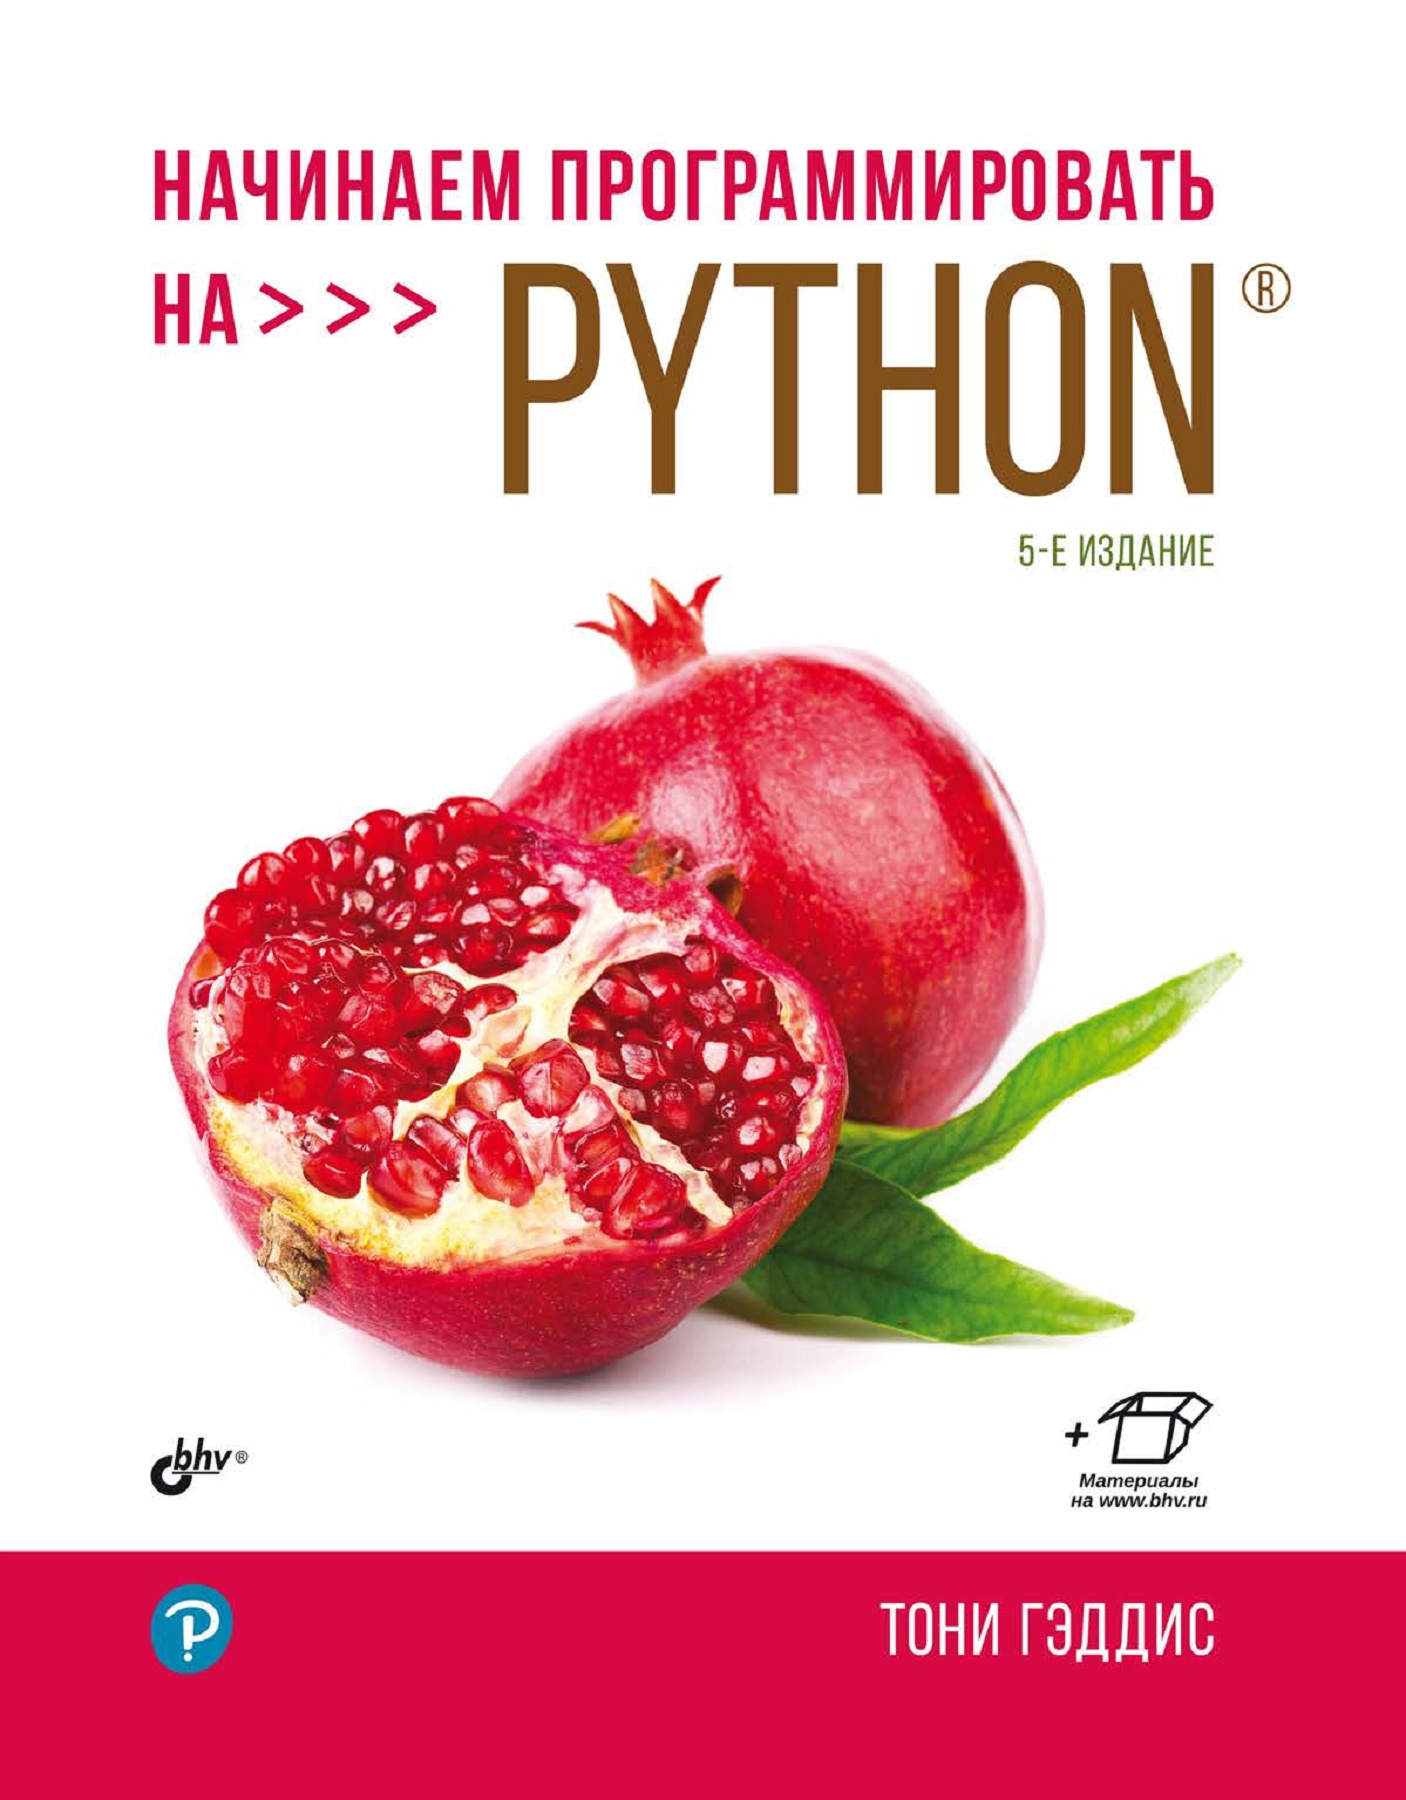 «Начинаем программировать на Python»